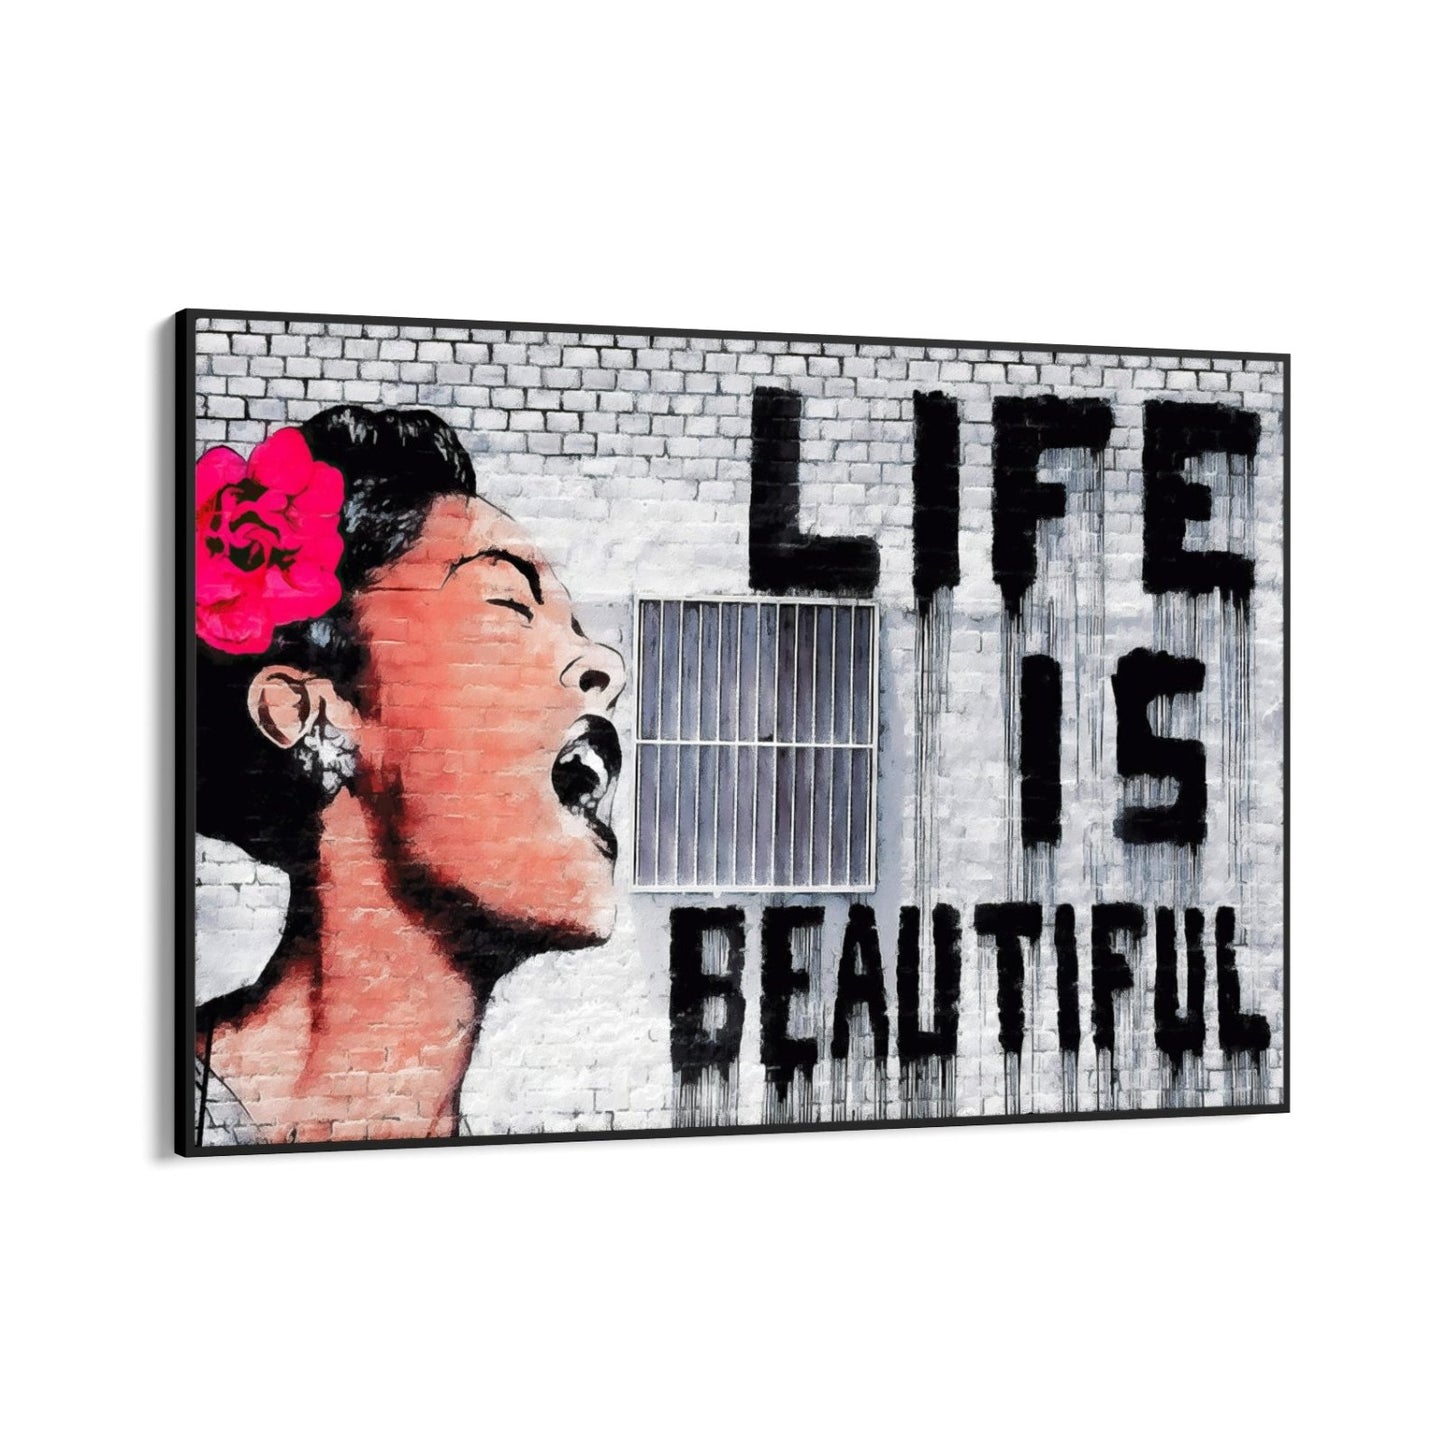 La vida es bella, Banksy.